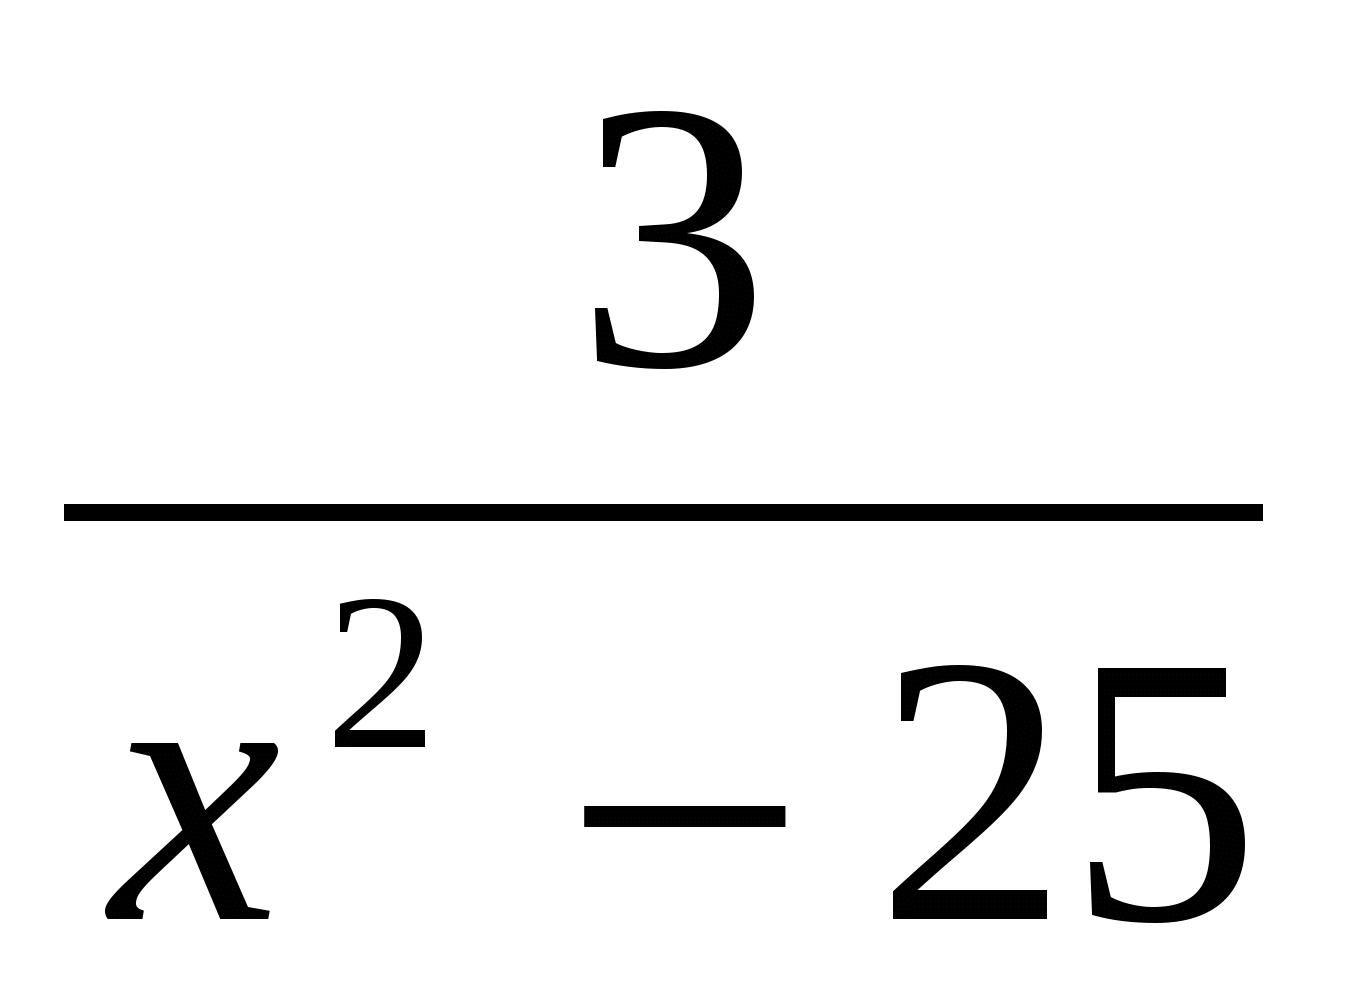 Контрольная работа Математика-9 за 1 полугодие (4 варианта, алгебра и геометрия)